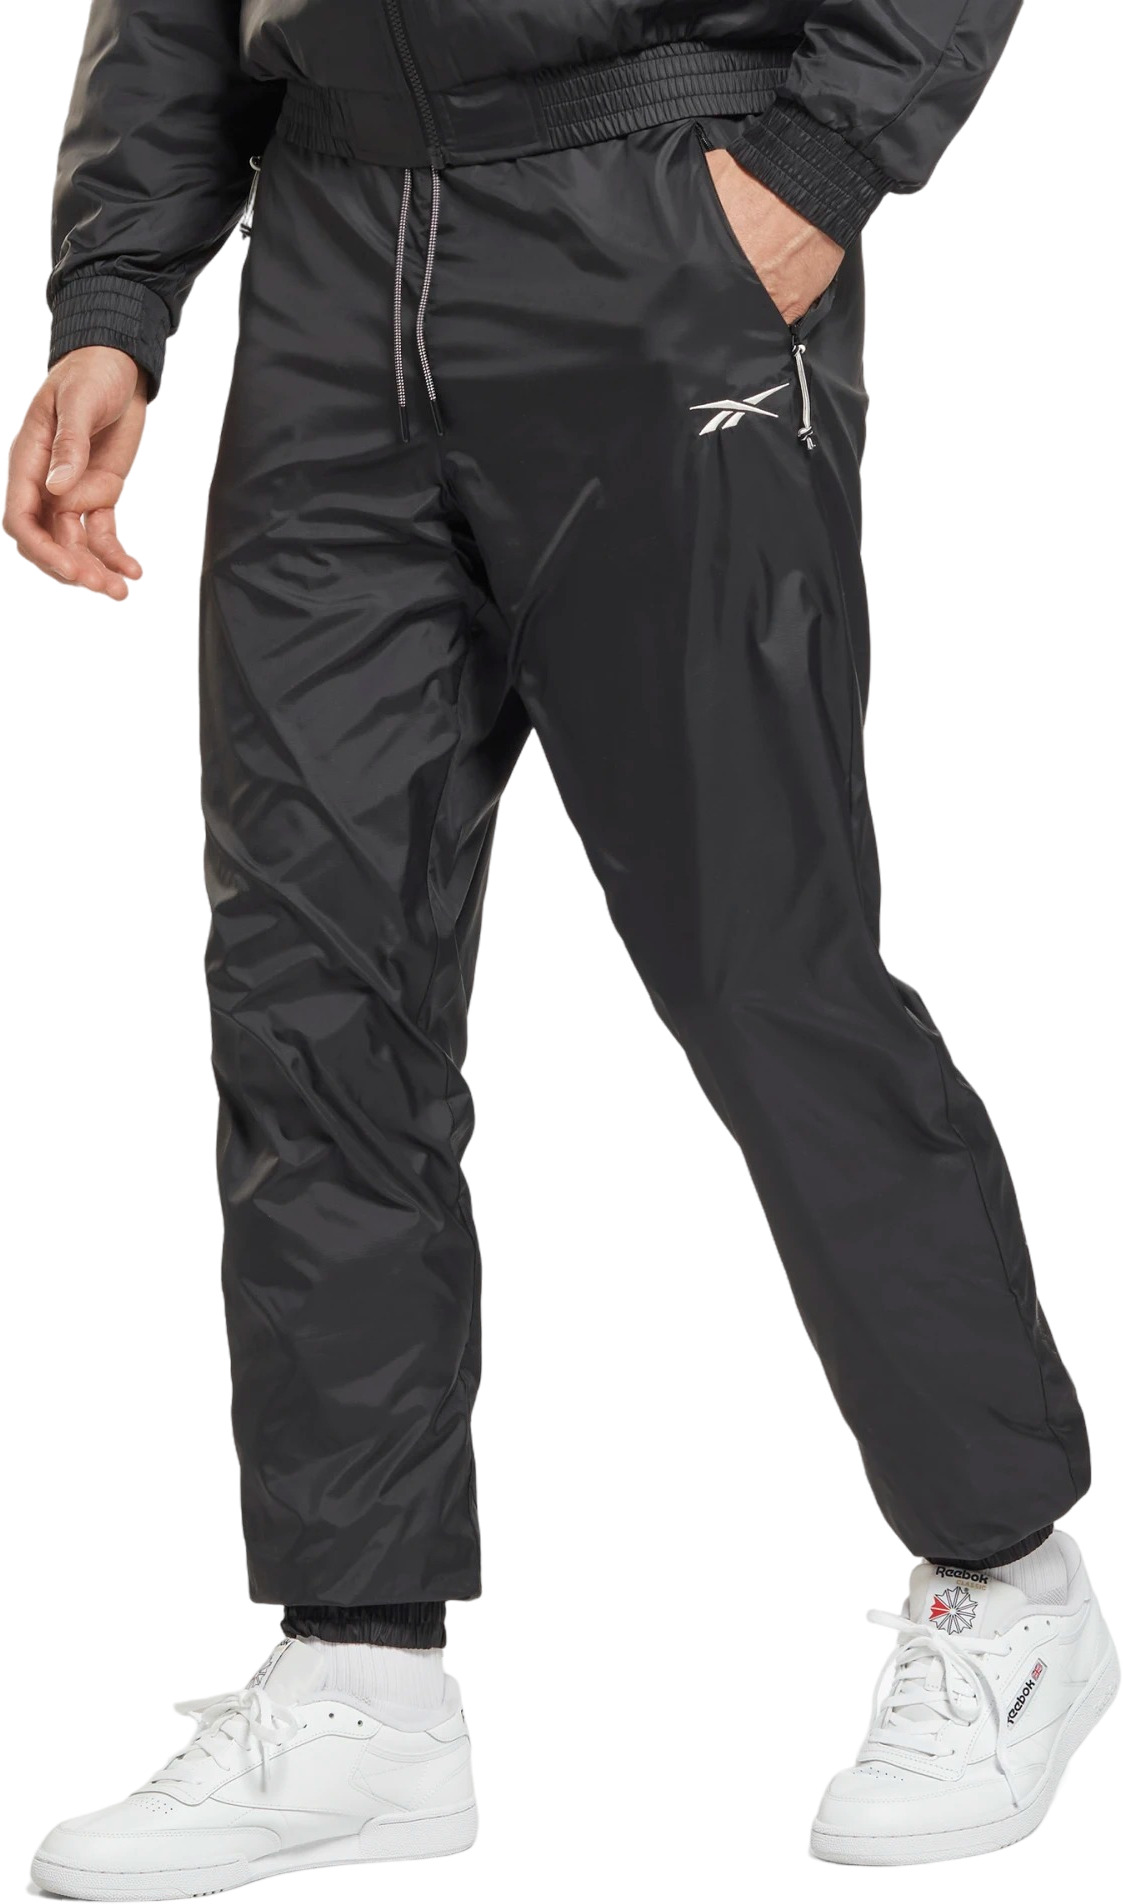 Спортивные брюки мужские Reebok Ow Fleece Lined Pants черные XL